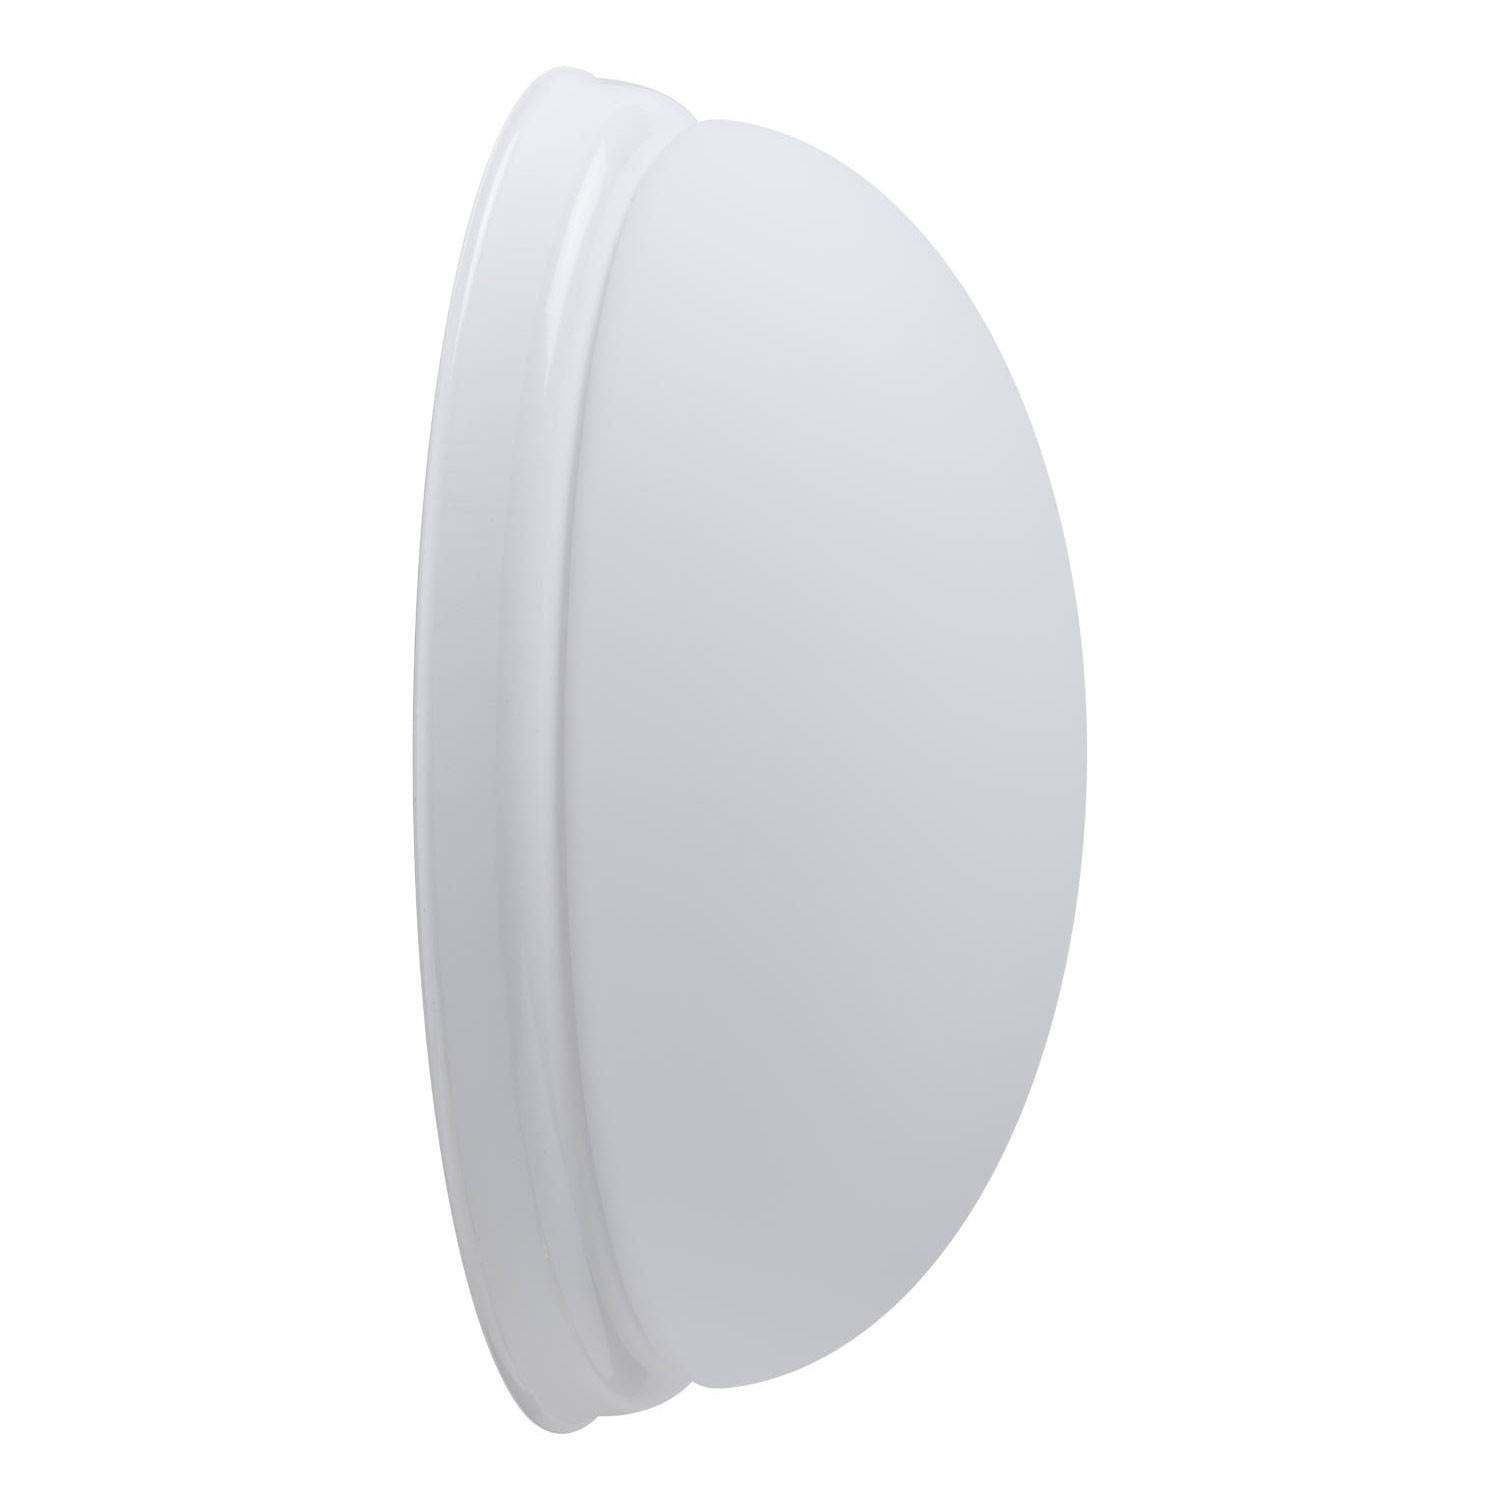 Ovale Glas-Wandleuchte ALVA mit Zierblende: Größe S, Länge 27 cm, Zierblende in weiß